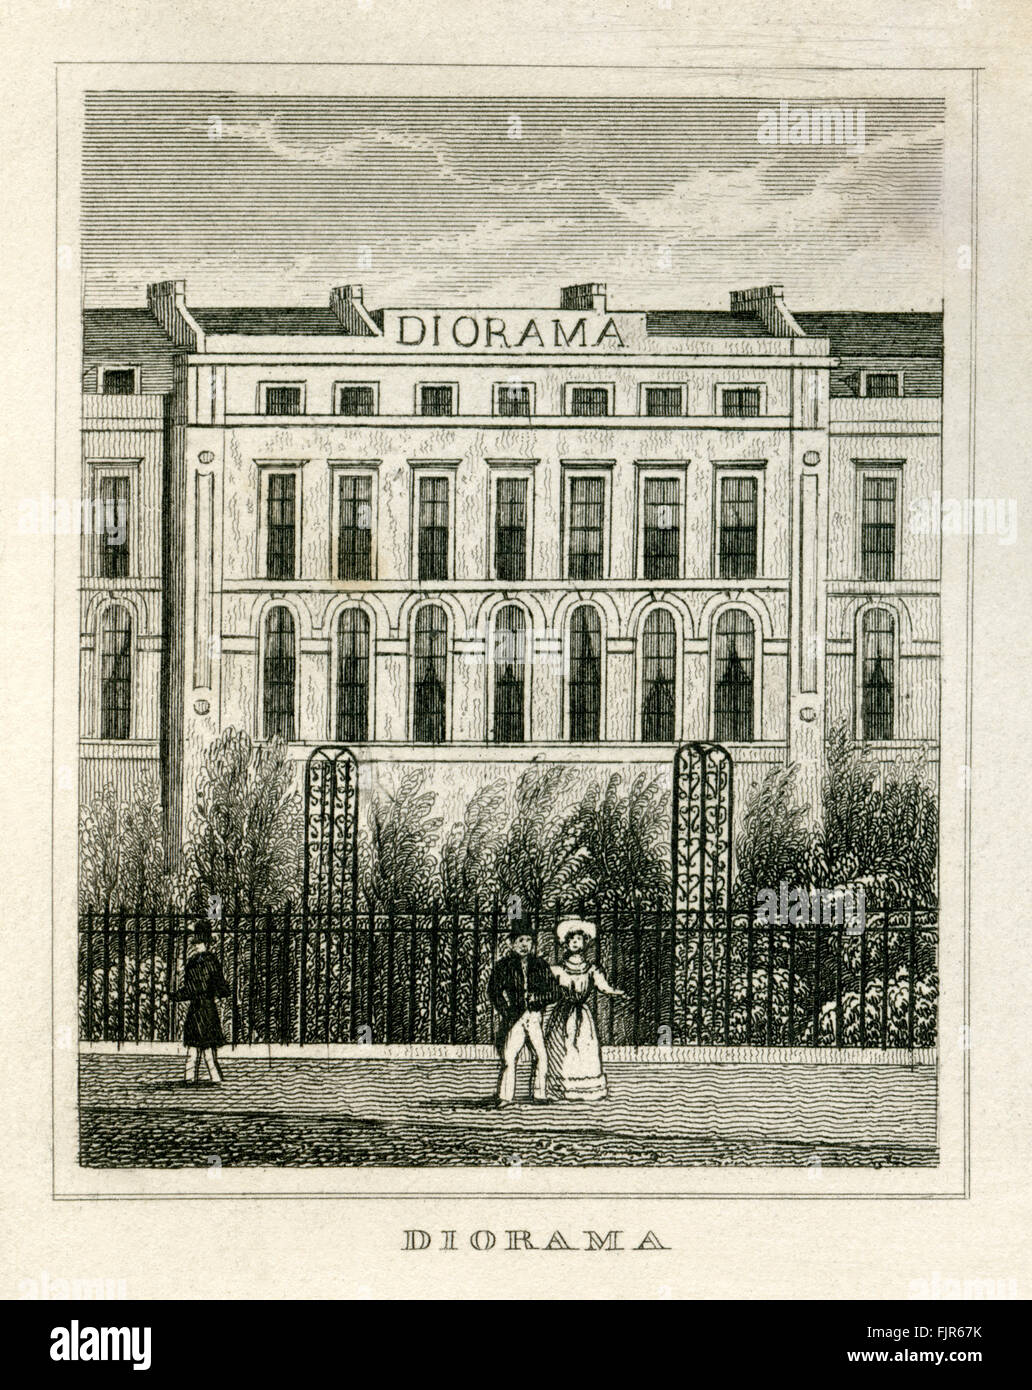 Diorama: vista de la fachada exterior, diseñado por John Nash (1752 - 1835). Edificio albergaba una exposición inaugurada en 1823 de arquitectura y paisaje. Londres. A partir de 1835 imprimir Foto de stock